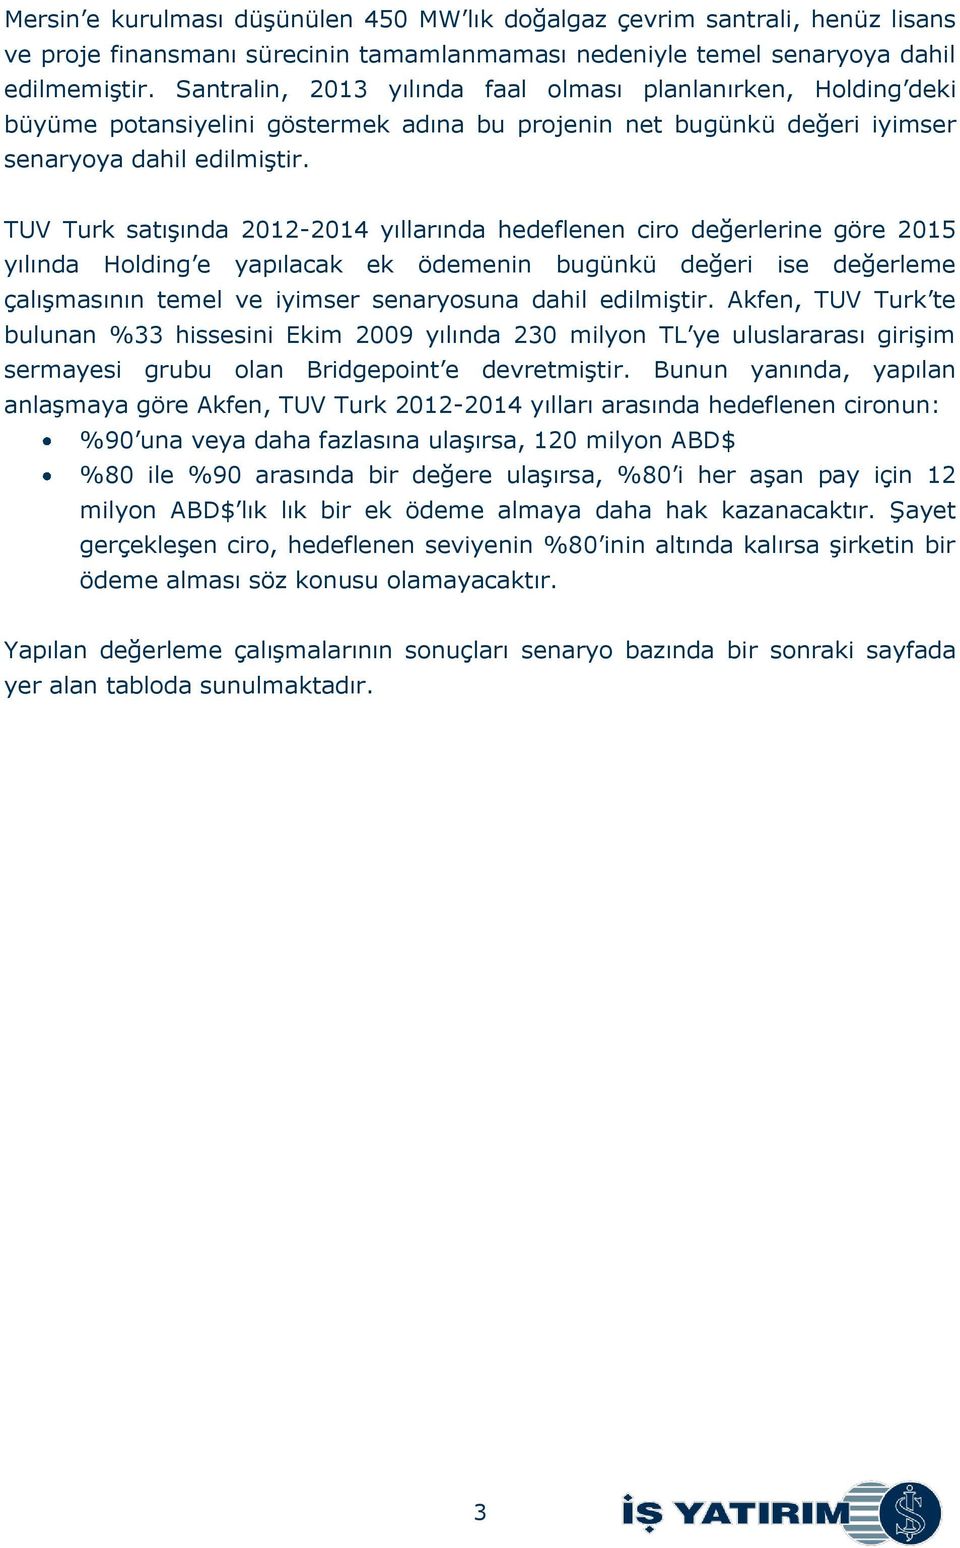 TUV Turk satışında 2012-2014 yıllarında hedeflenen ciro değerlerine göre 2015 yılında Holding e yapılacak ek ödemenin bugünkü değeri ise değerleme çalışmasının temel ve iyimser senaryosuna dahil